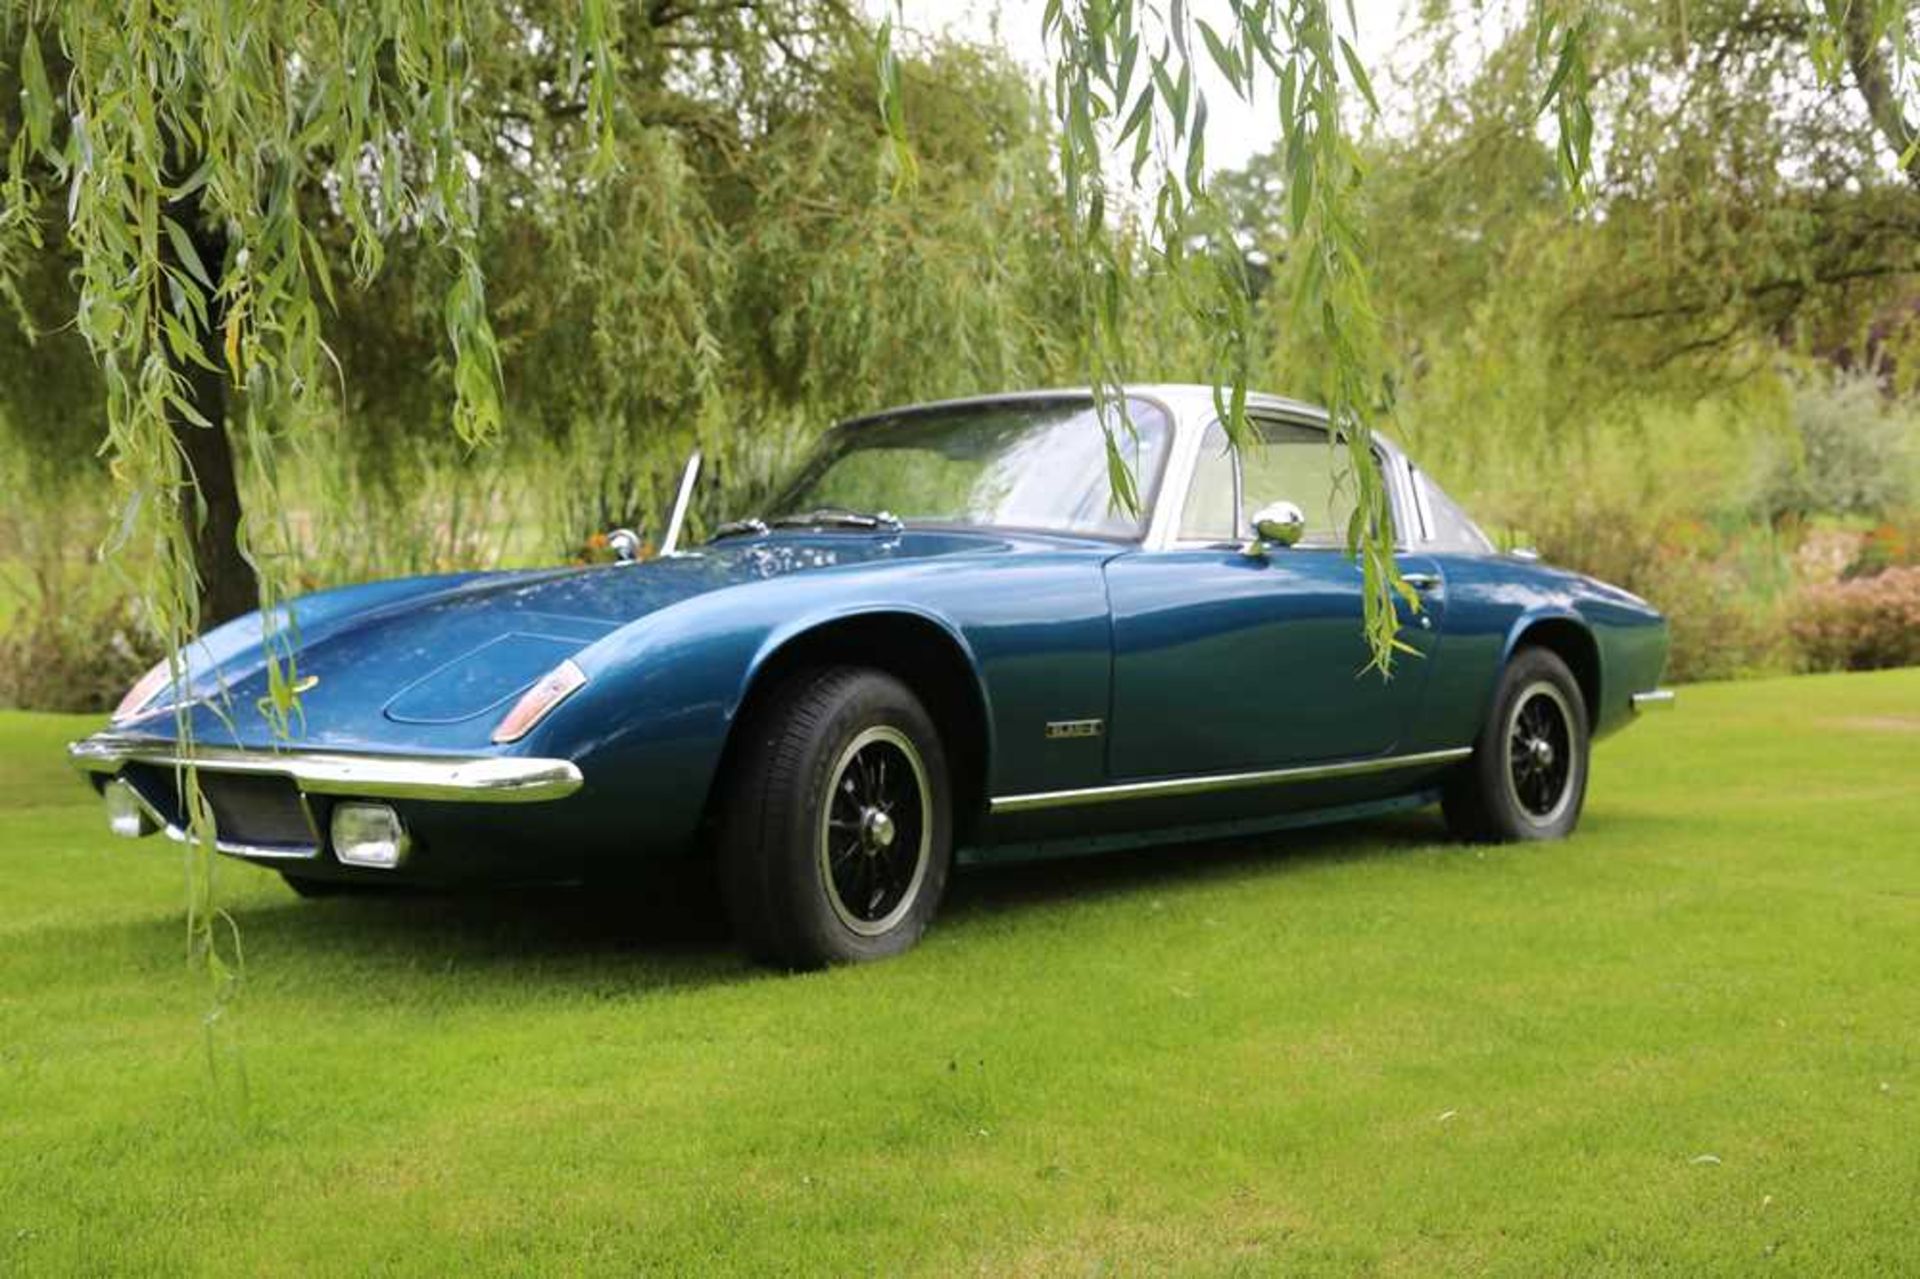 1973 Lotus Elan +2 Coupe - Image 10 of 79